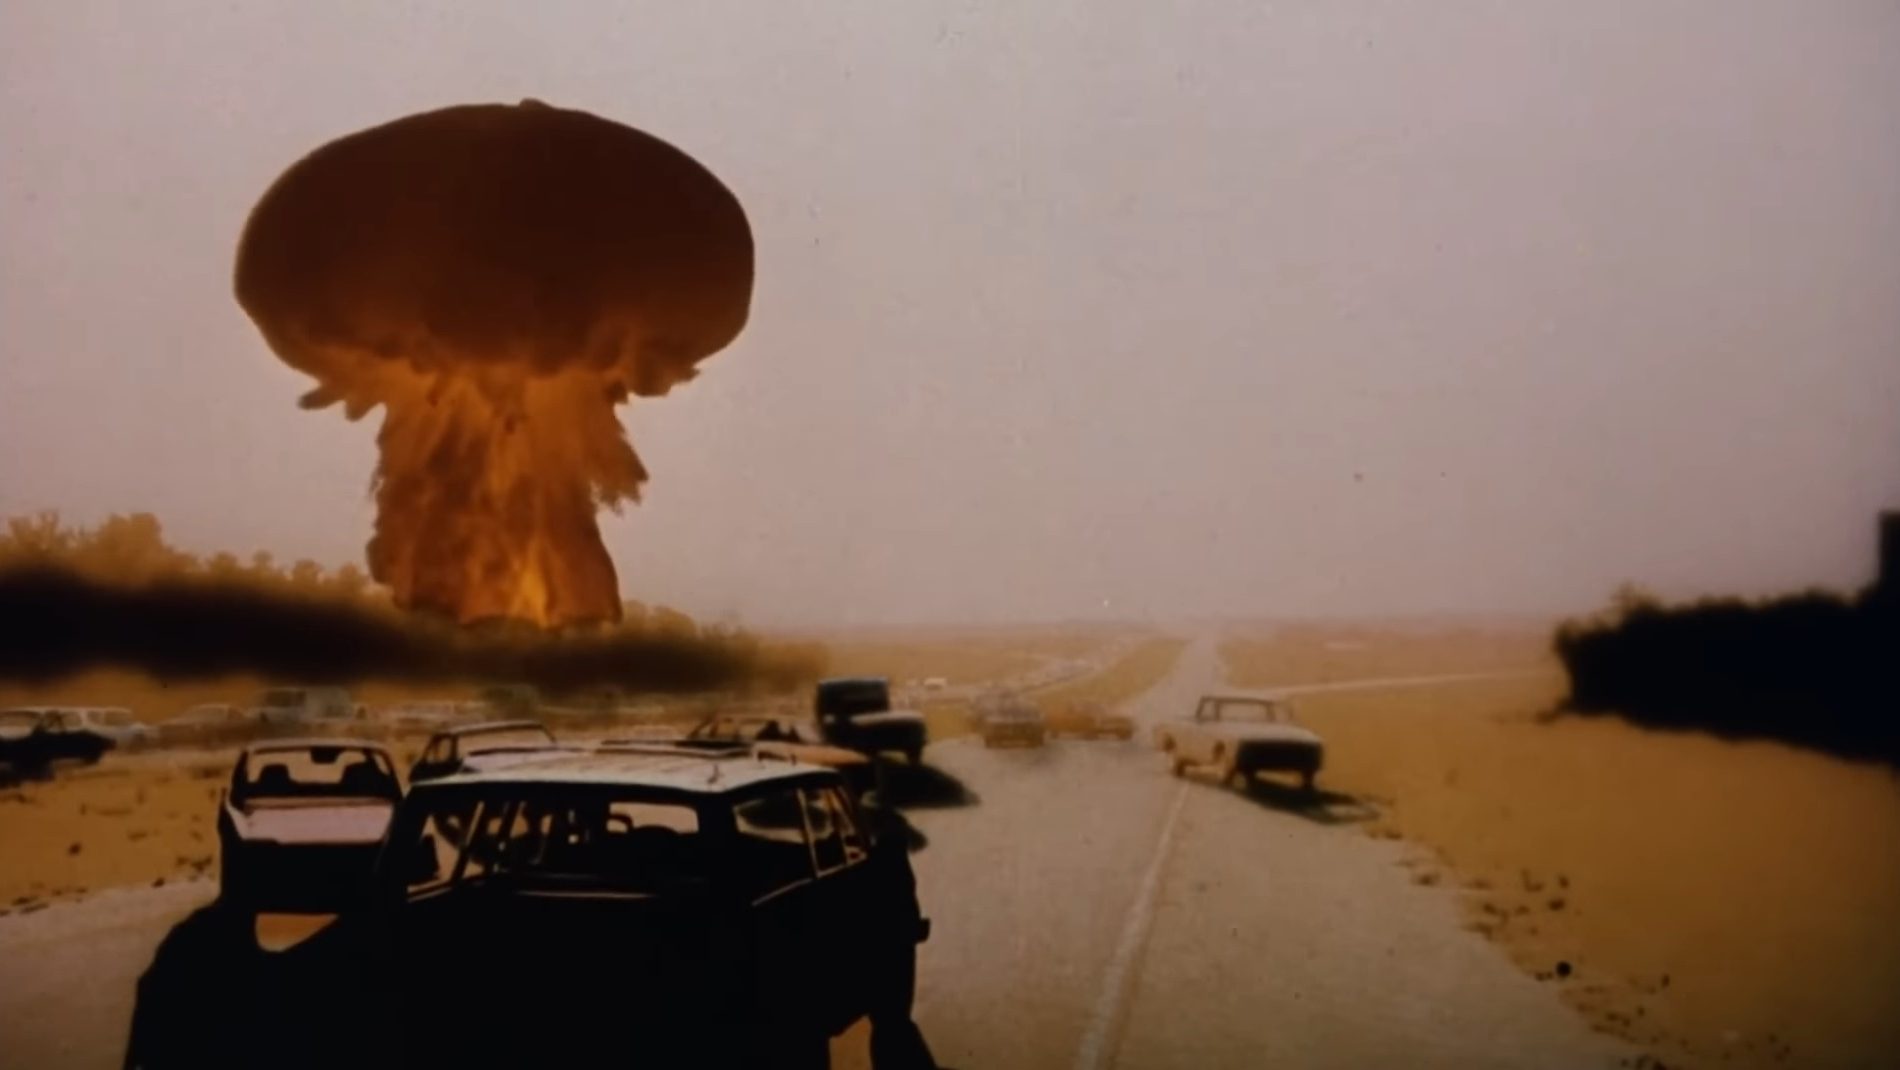 Uma explosão nuclear em "The Day After".